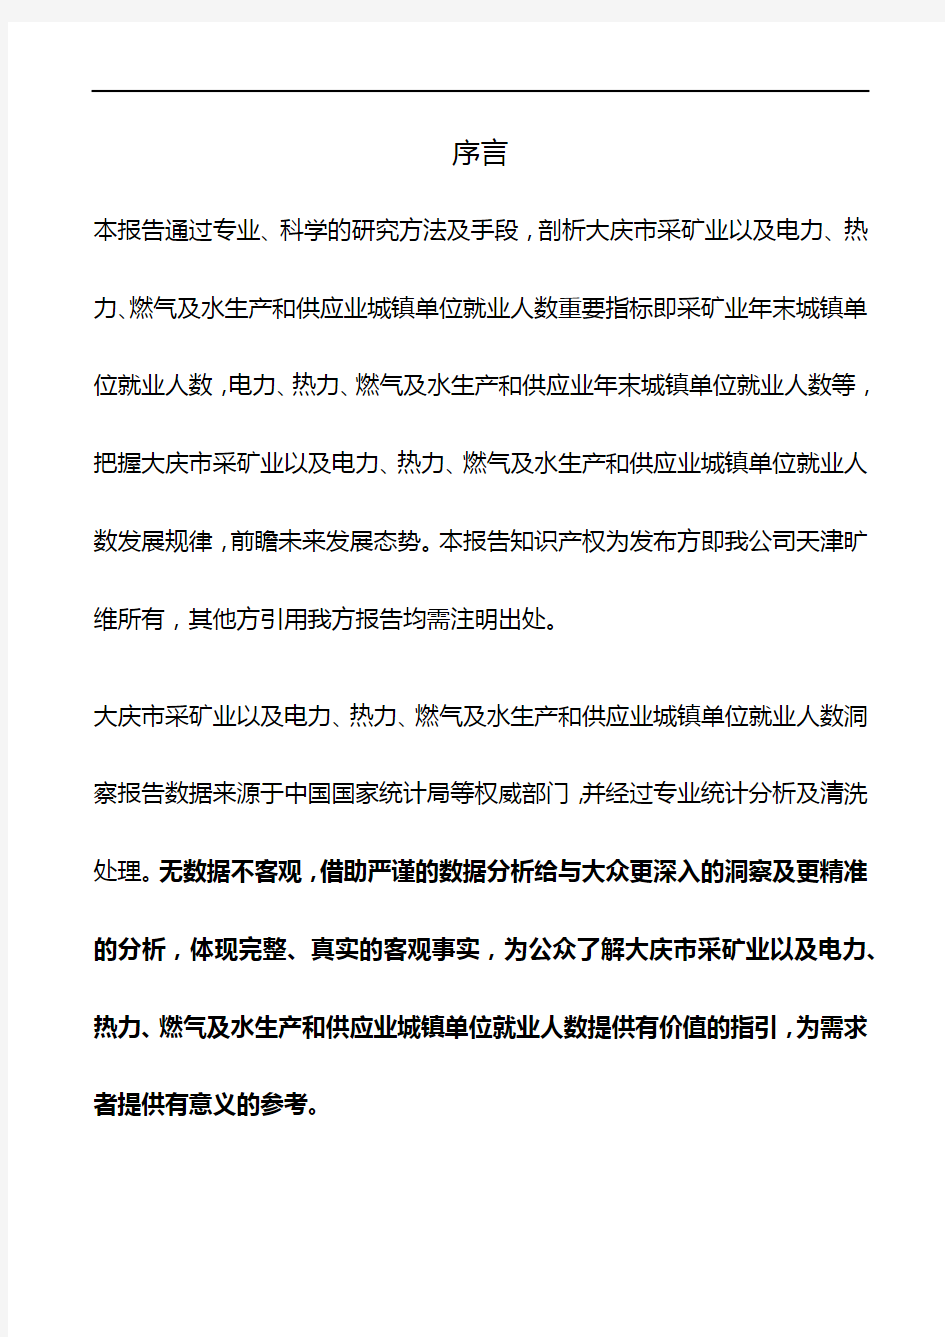 大庆市(全市)采矿业以及电力、热力、燃气及水生产和供应业城镇单位就业人数3年数据洞察报告2019版